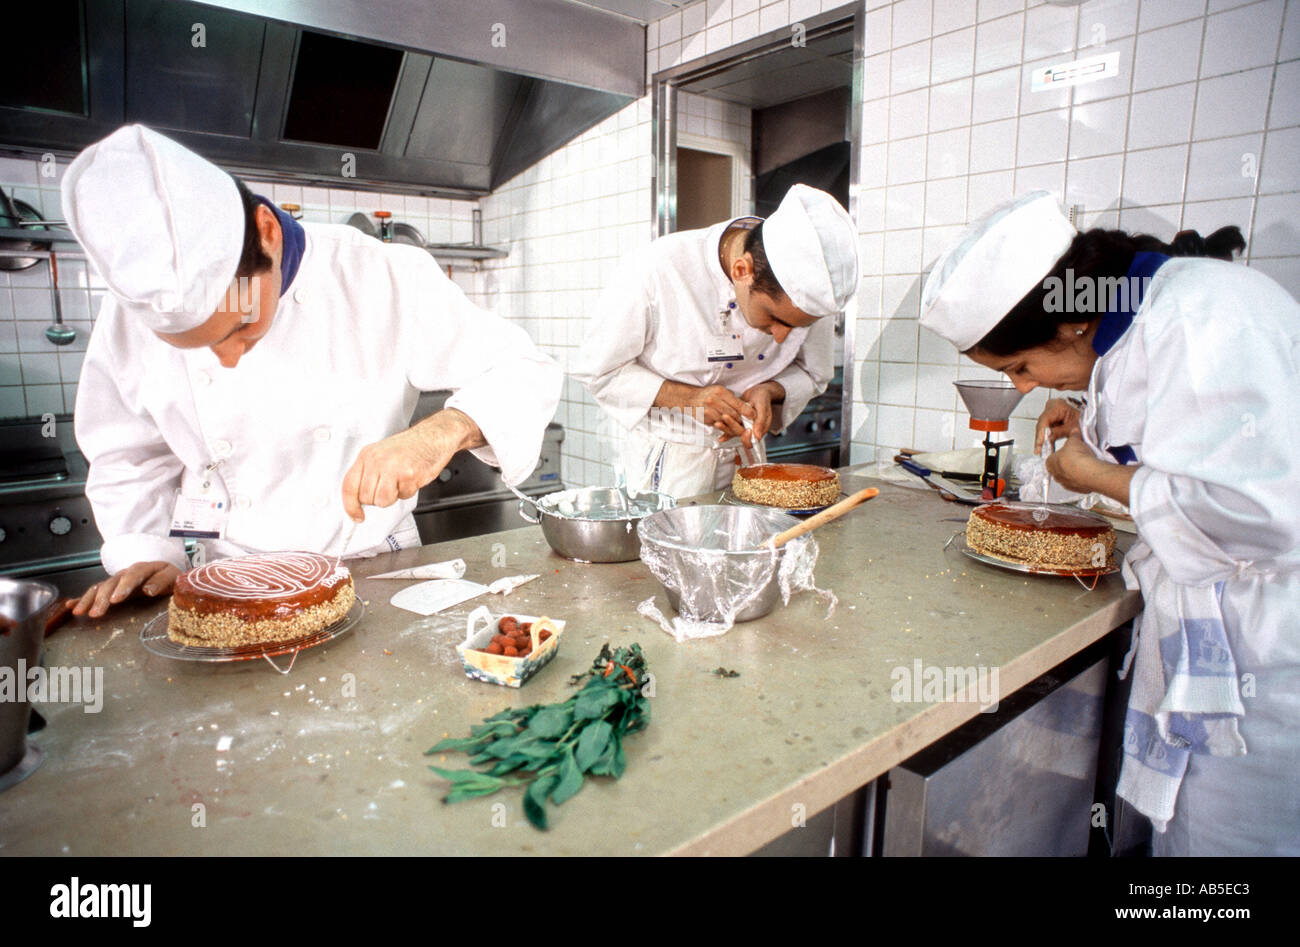 26 Best Photos Escuela De Cocina Cordon Bleu - Le Cordon Bleu Lanza Concursos Por Sus 125 Anos Excelencias Gourmet